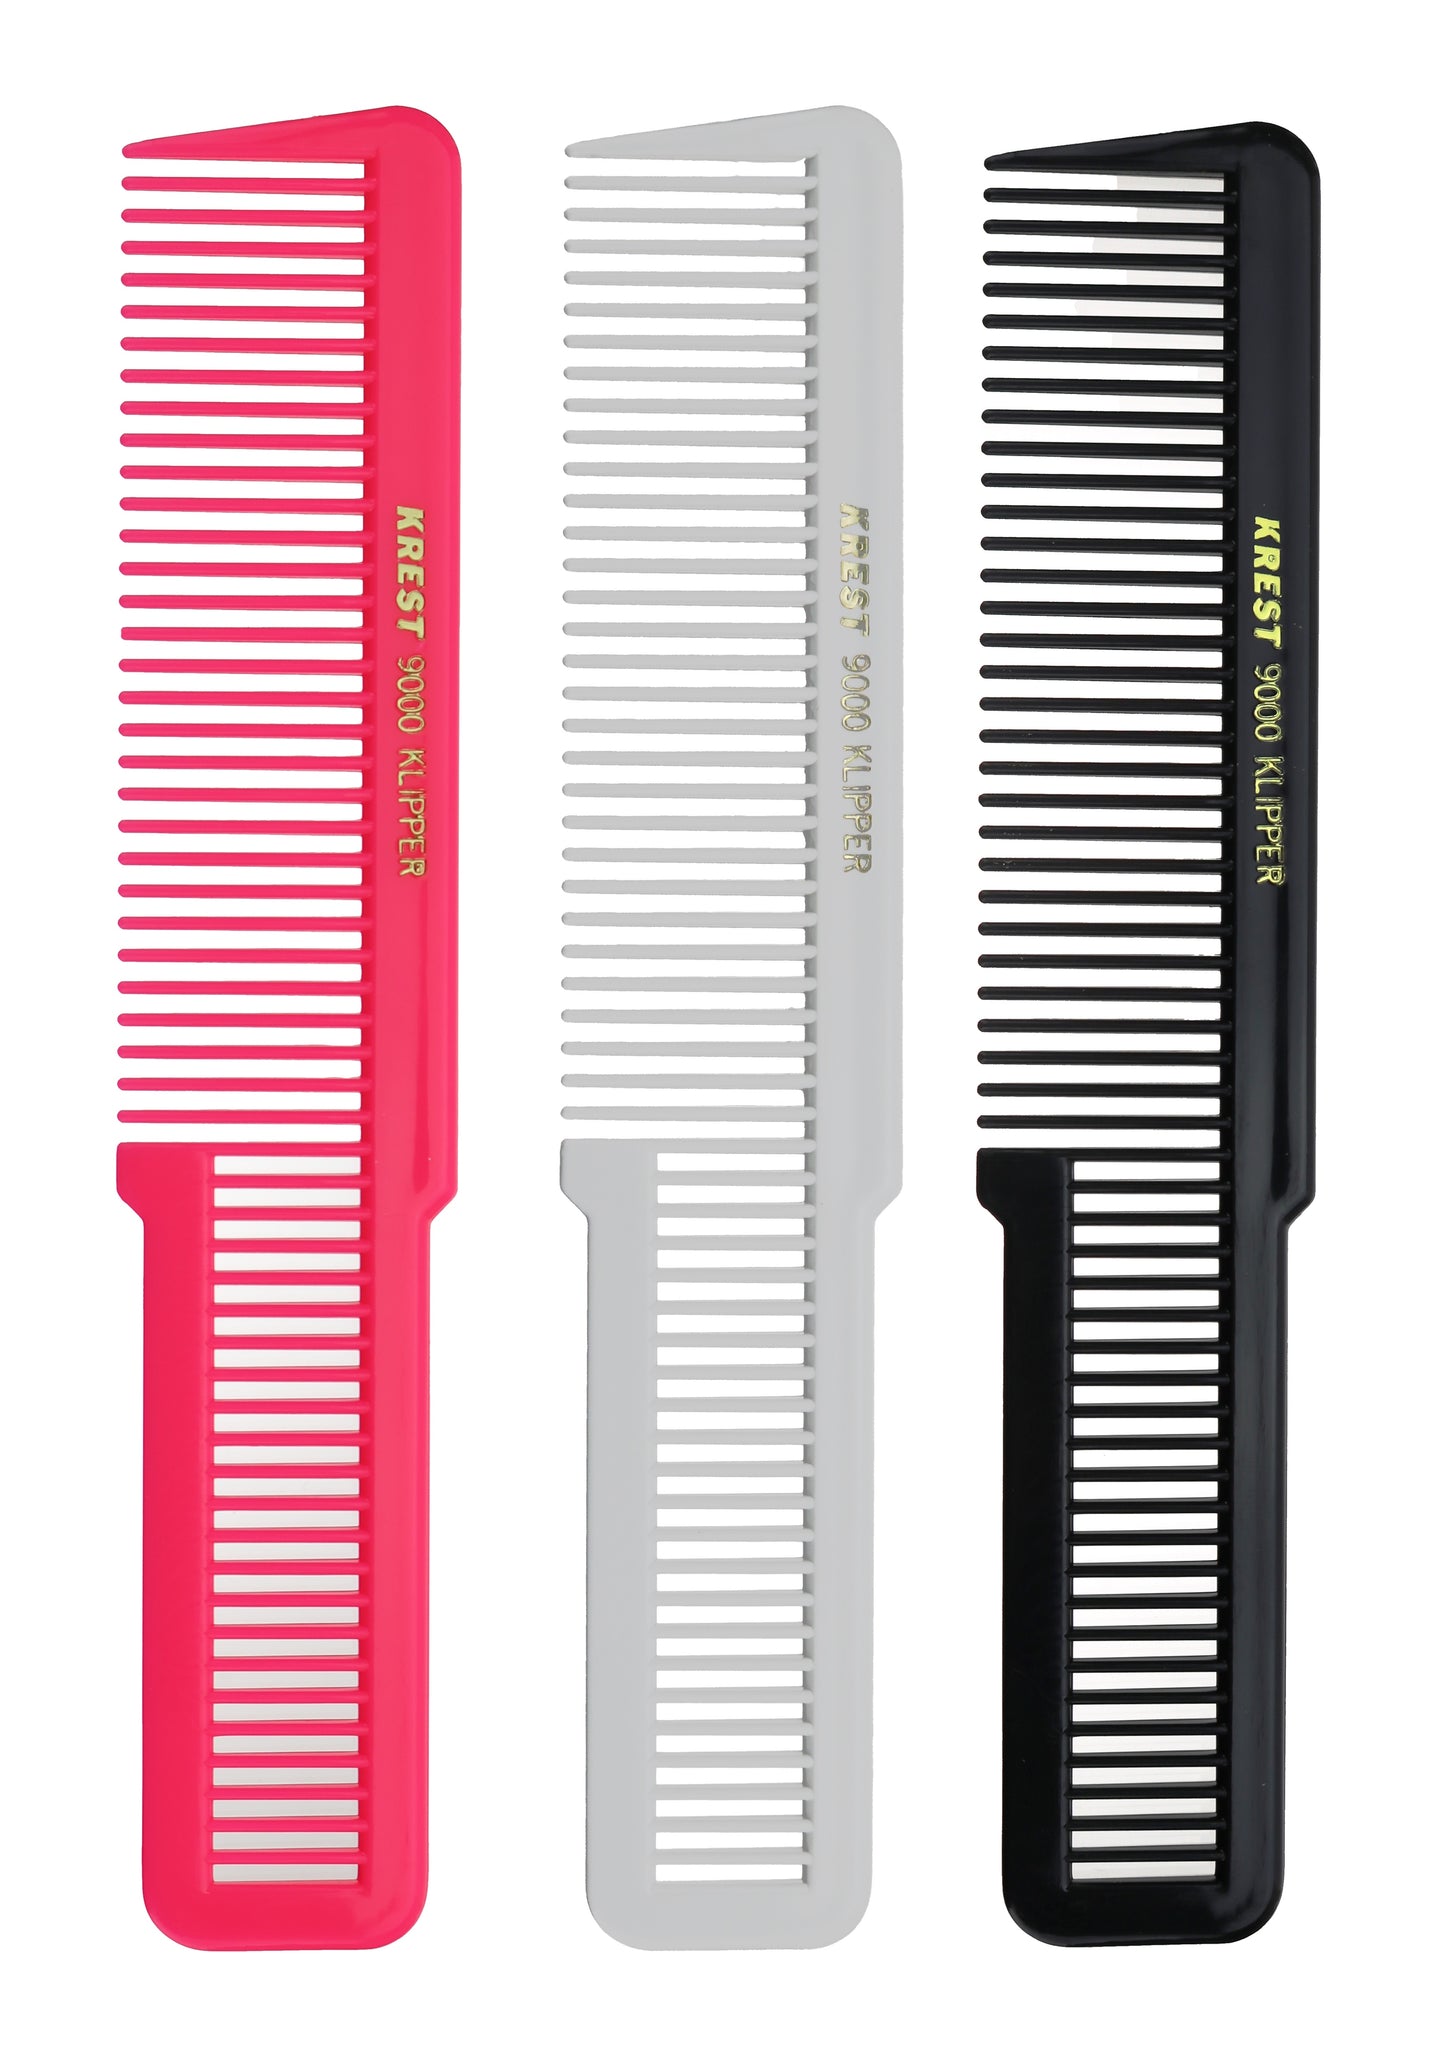 8 In. Krest Combs 9000 Clipper Cutting Comb Flattop Combs Klipper Comb. 3 pcs.